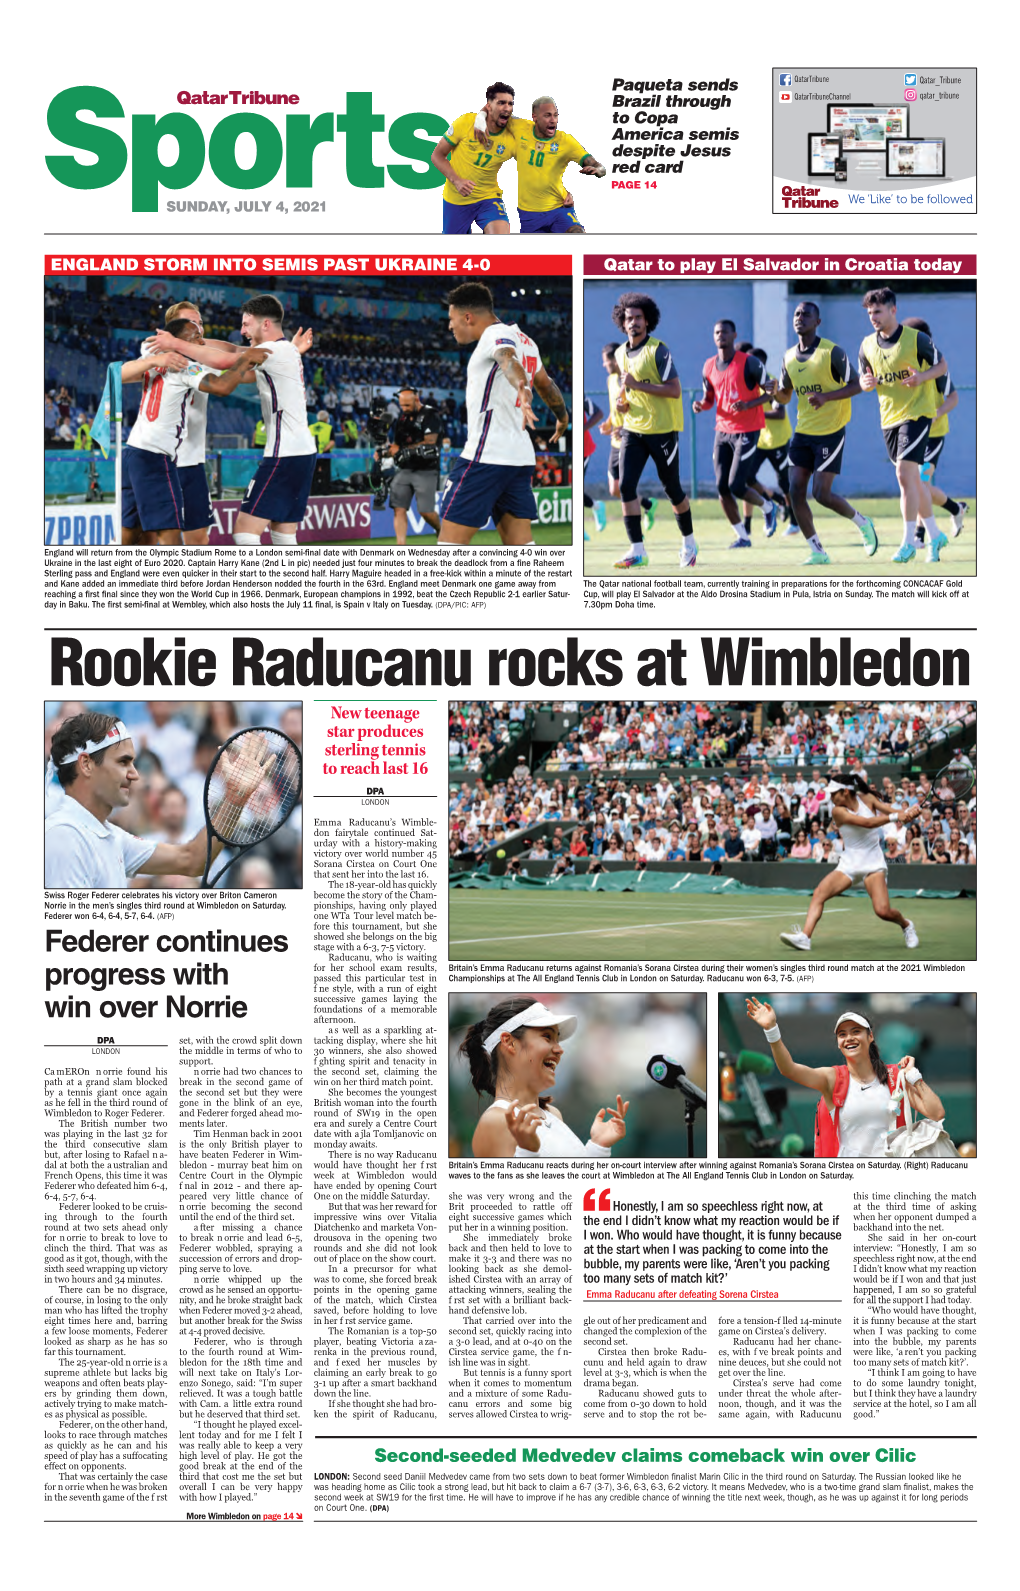 Rookie Raducanu Rocks at Wimbledon New Teenage Star Produces Sterling Tennis to Reach Last 16 DPA London